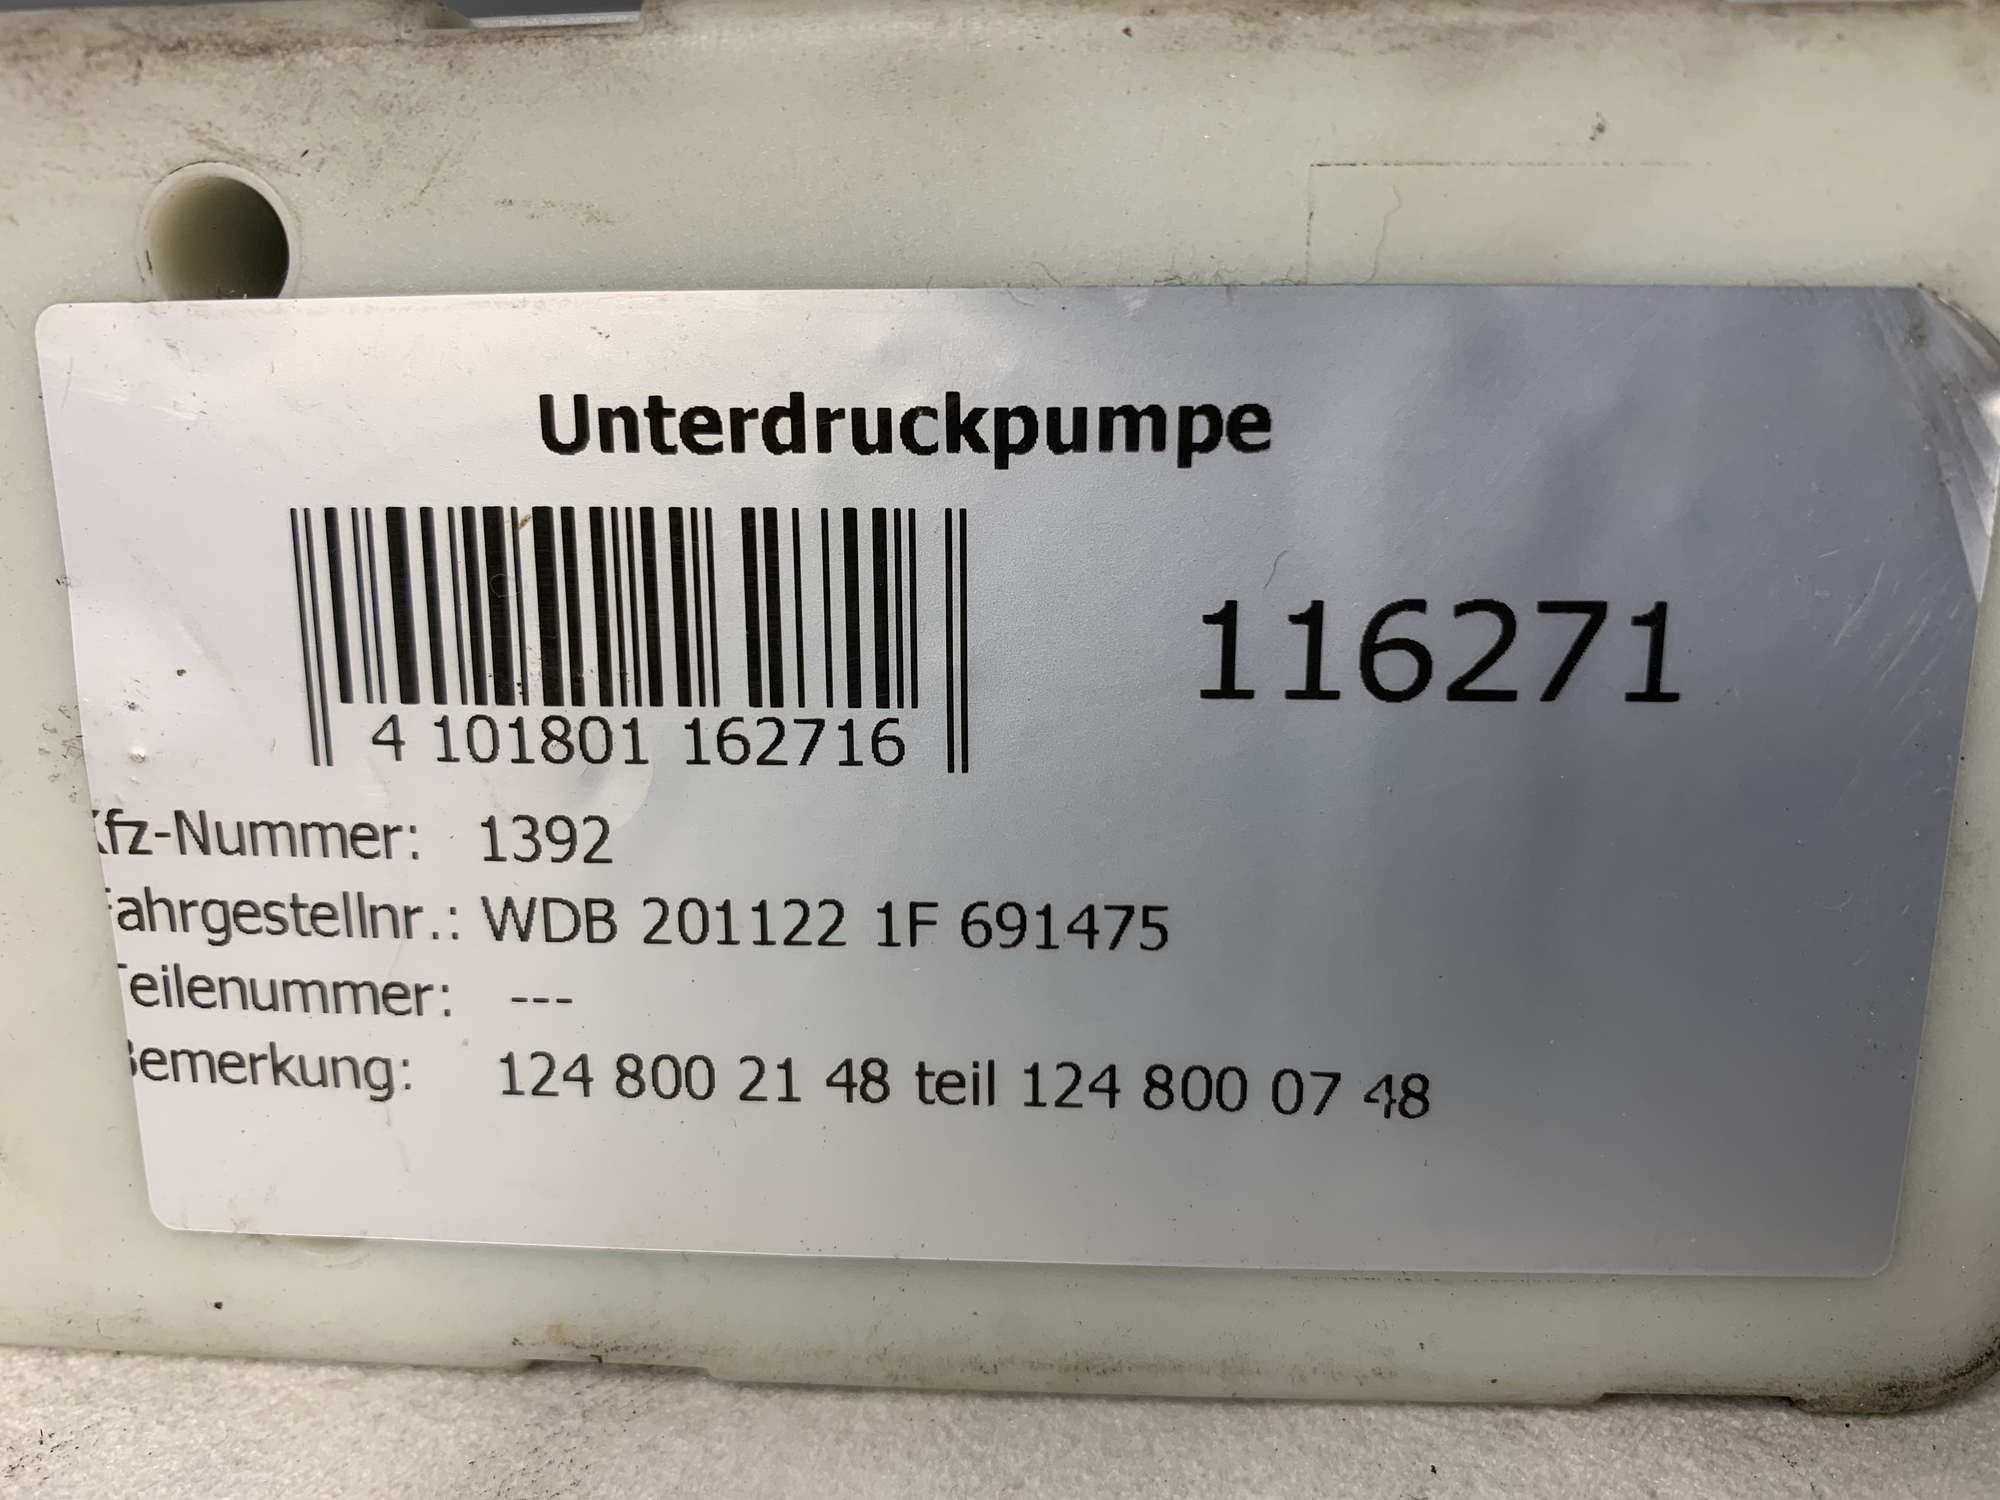 UNTERDRUCKPUMPE für Mercedes (1248002148)